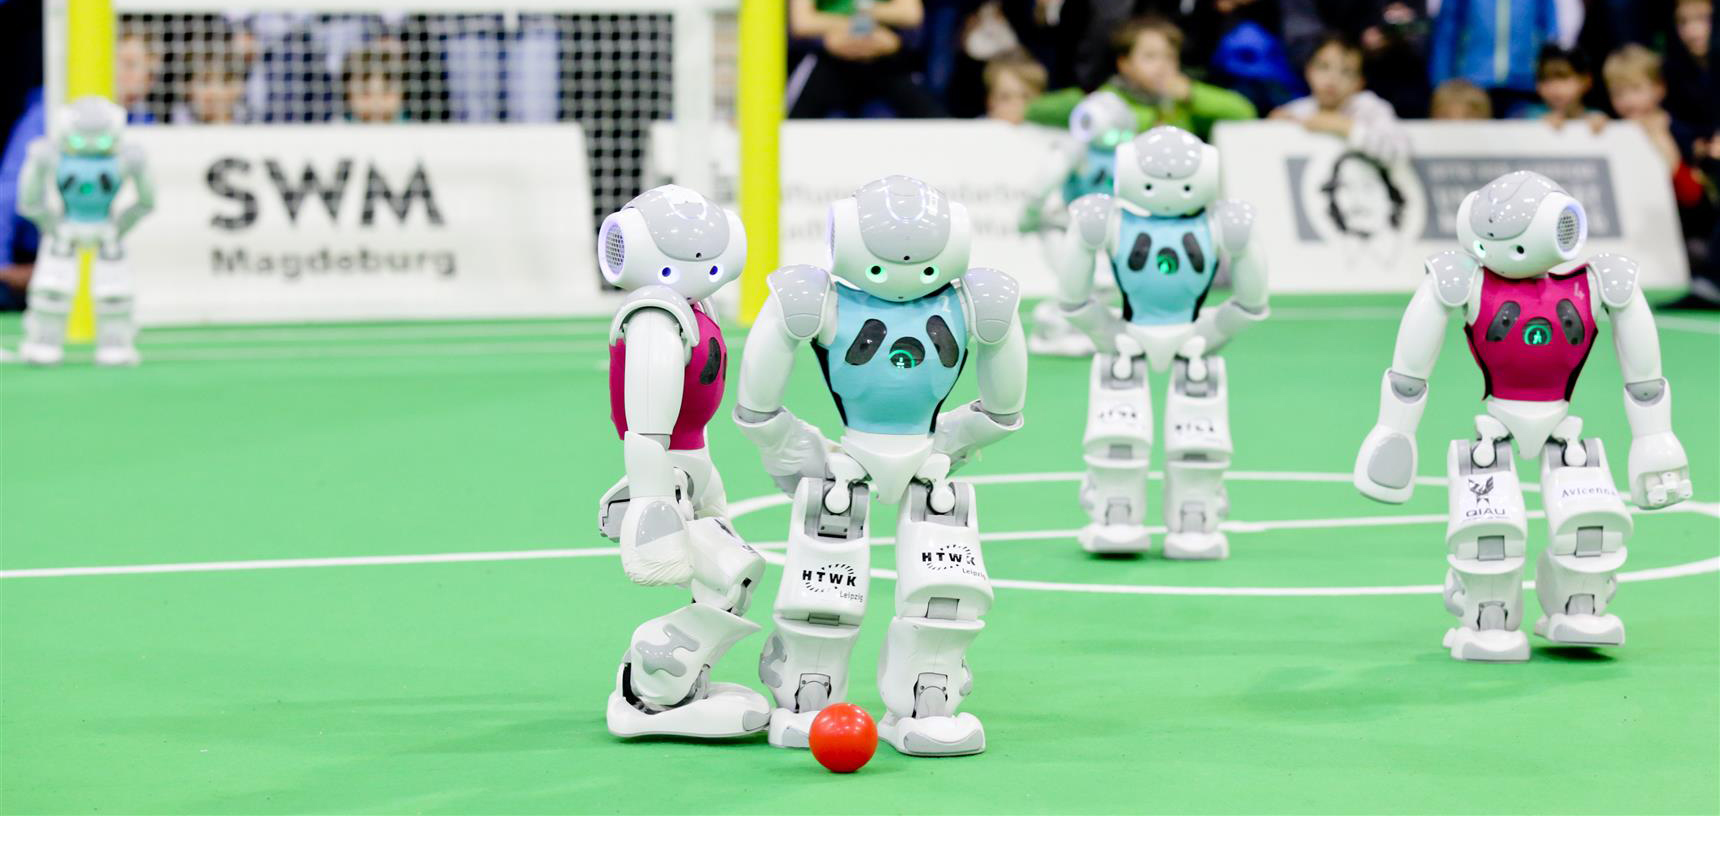 La edición 2016 de la RoboCup espera recibir modelos innovadores fuera del campo desarrollen actividades en pro de la sociedad